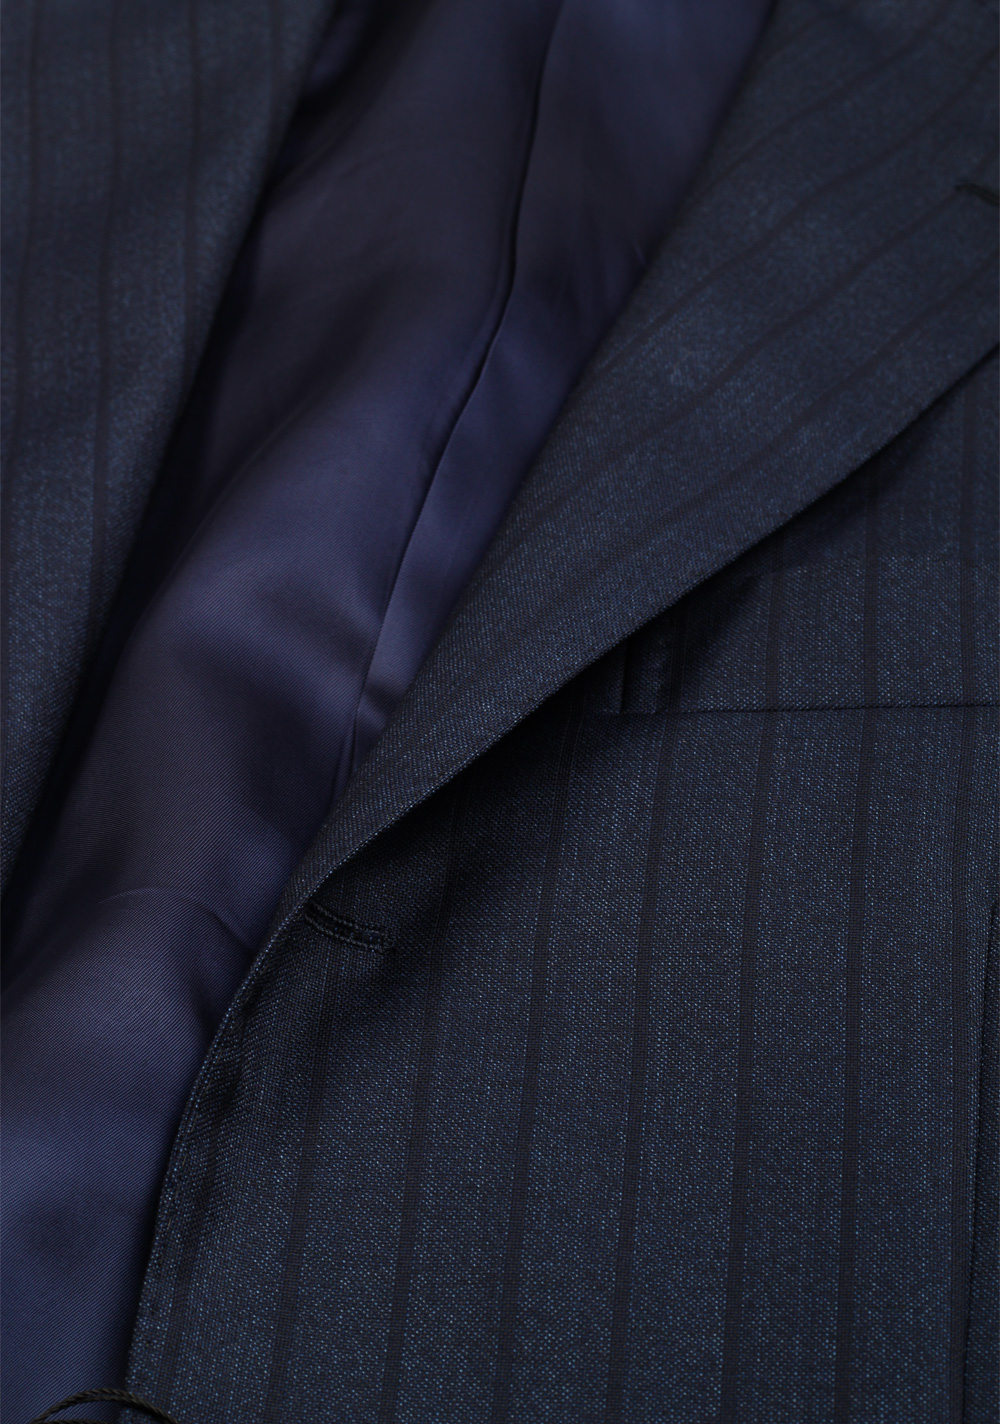 Ring Jacket Blue Striped Suit Size 44 / 34R U.S. | Costume Limité